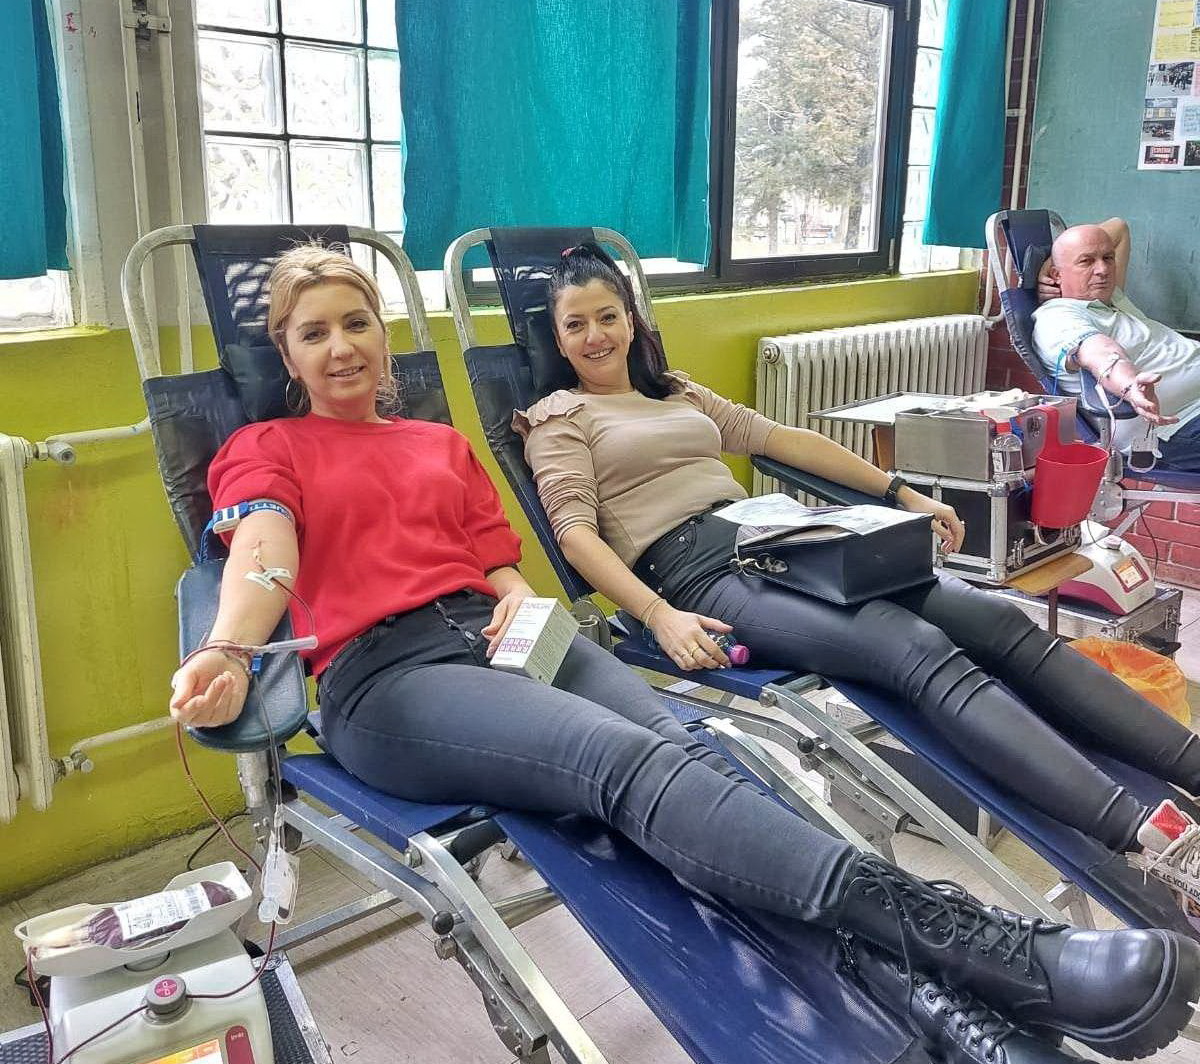 Akcije dobrovoljnog davanja krvi u Česteregu i Međi